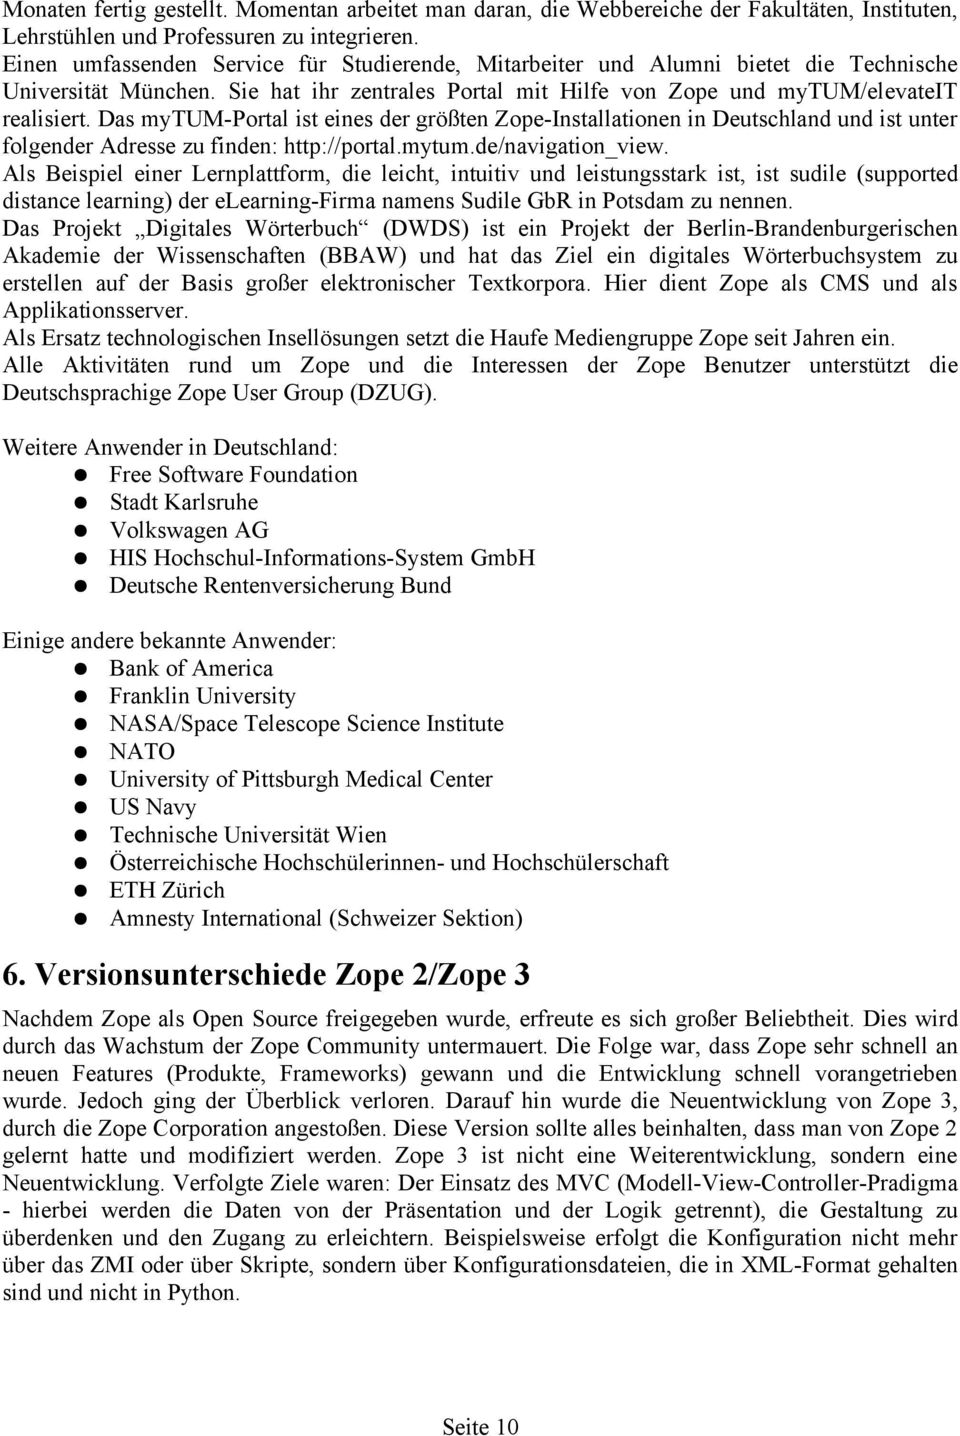 Das mytum-portal ist eines der größten Zope-Installationen in Deutschland und ist unter folgender Adresse zu finden: http://portal.mytum.de/navigation_view.